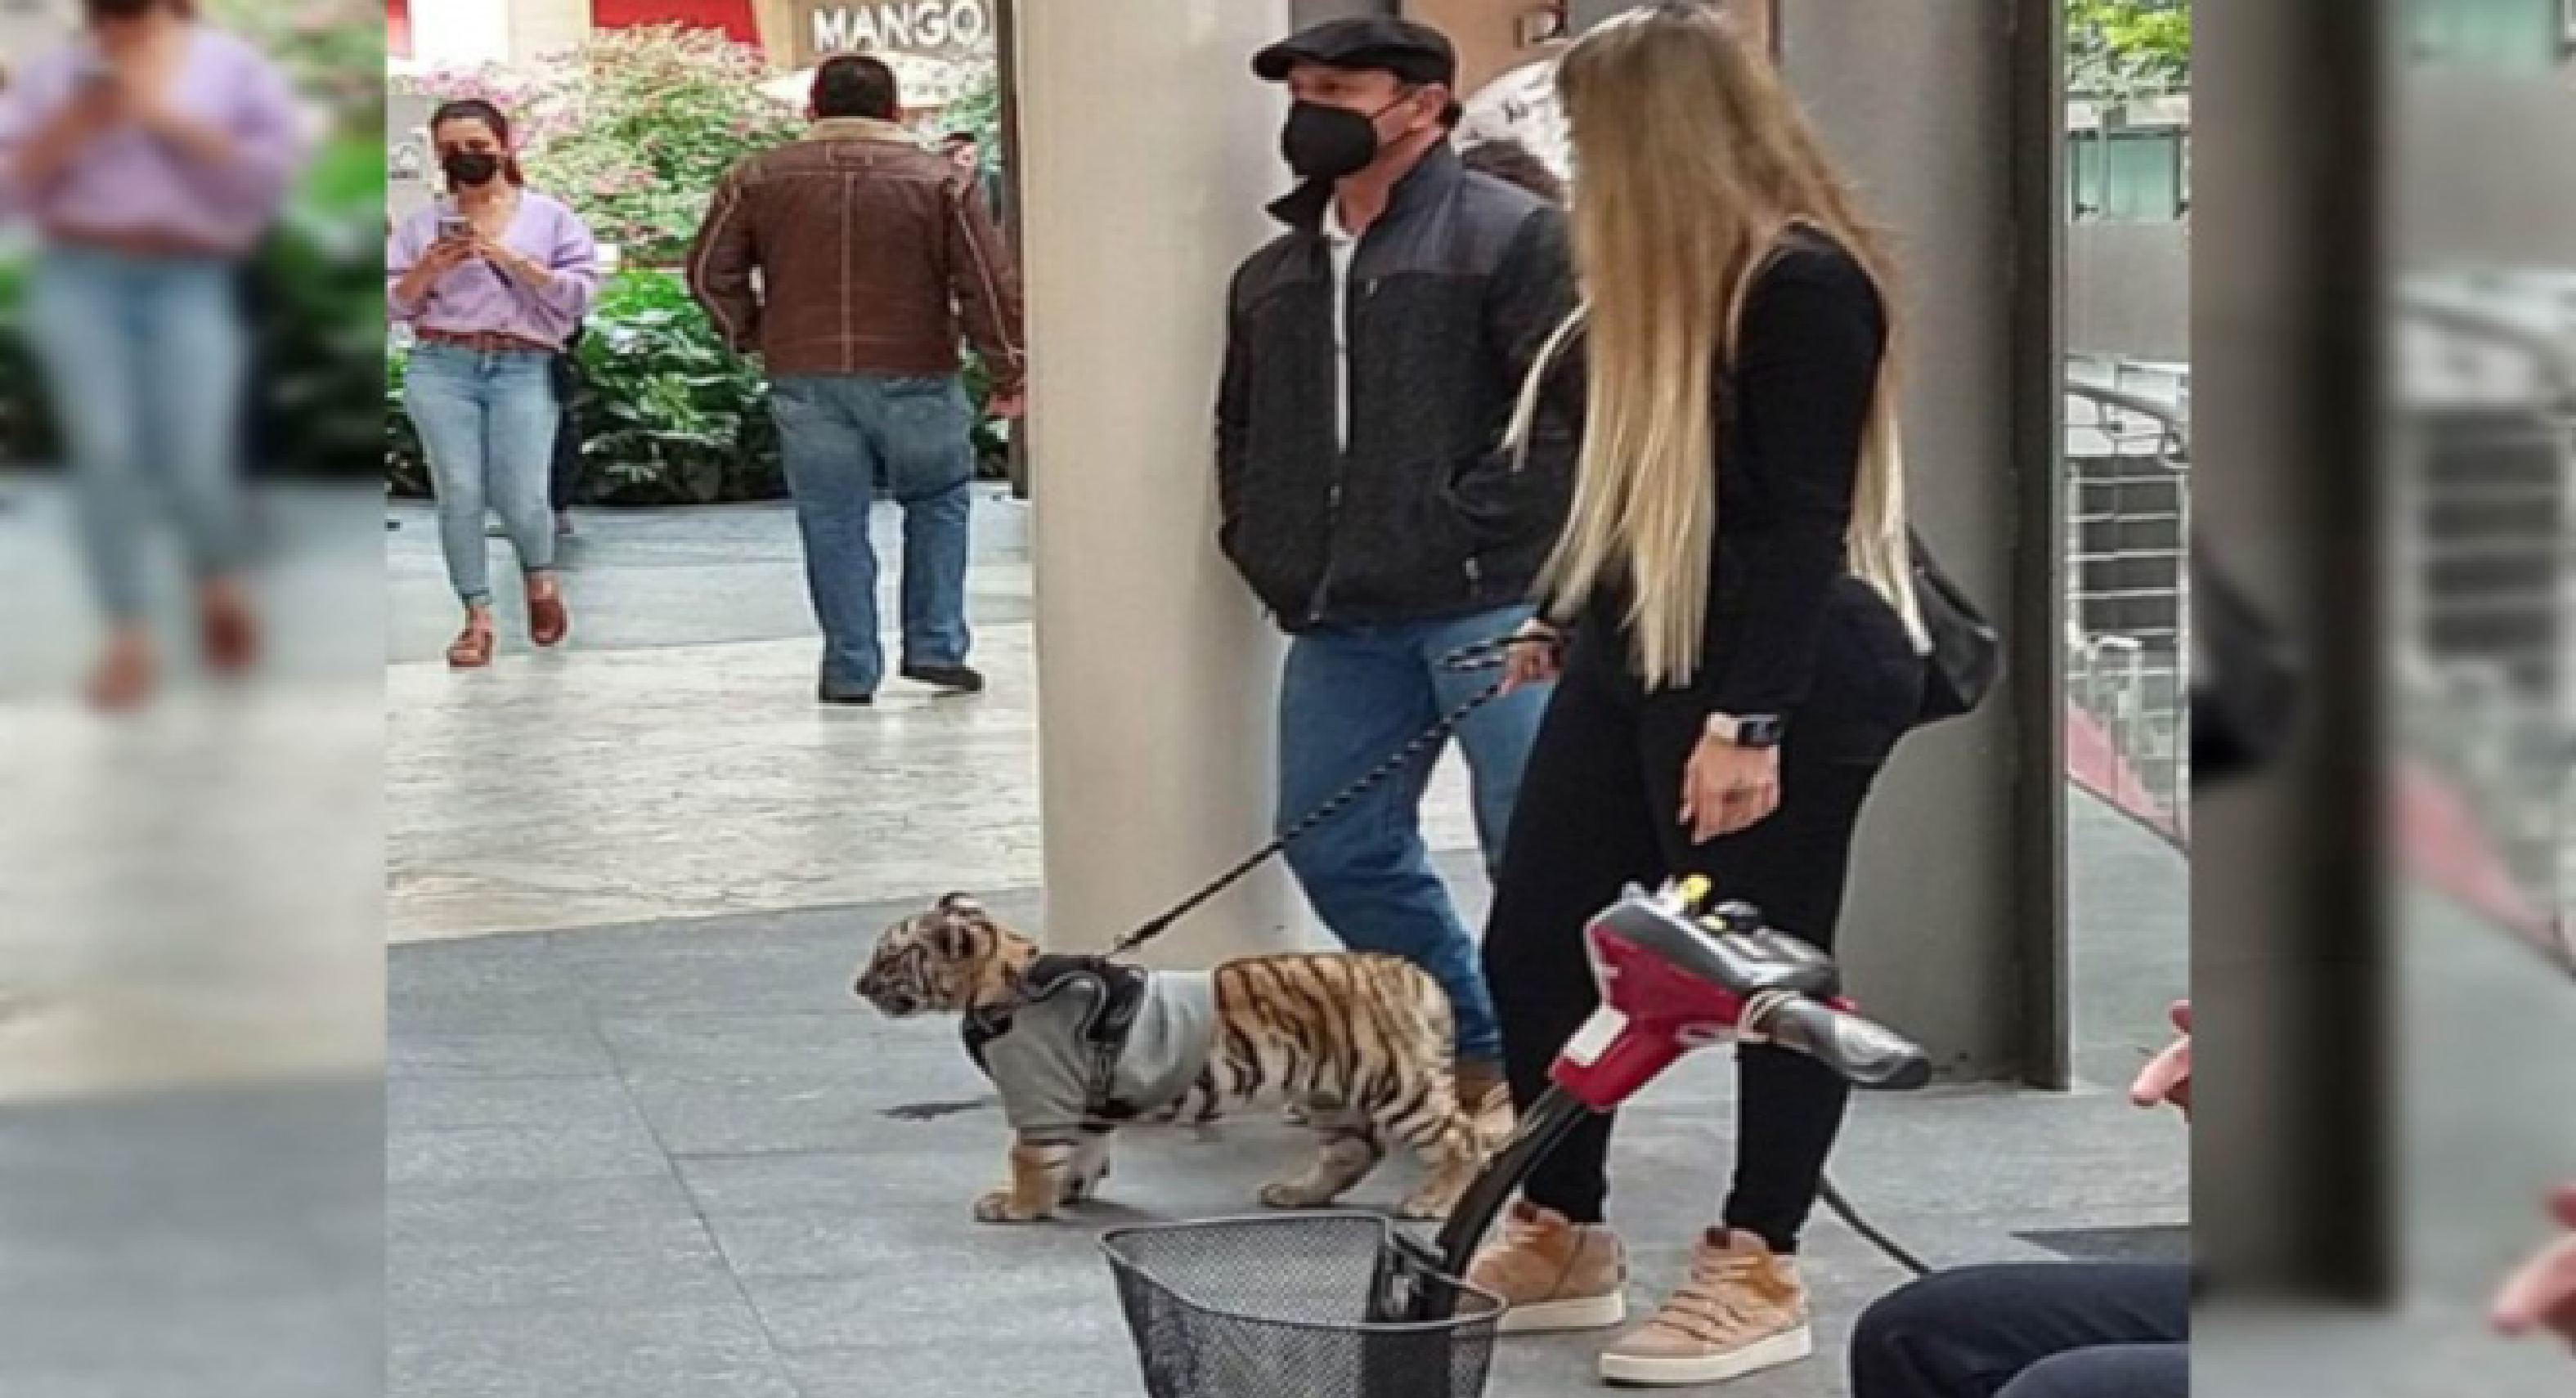 Mujer pasea a un cachorro tigre en una Plaza de Polanco-CDMX